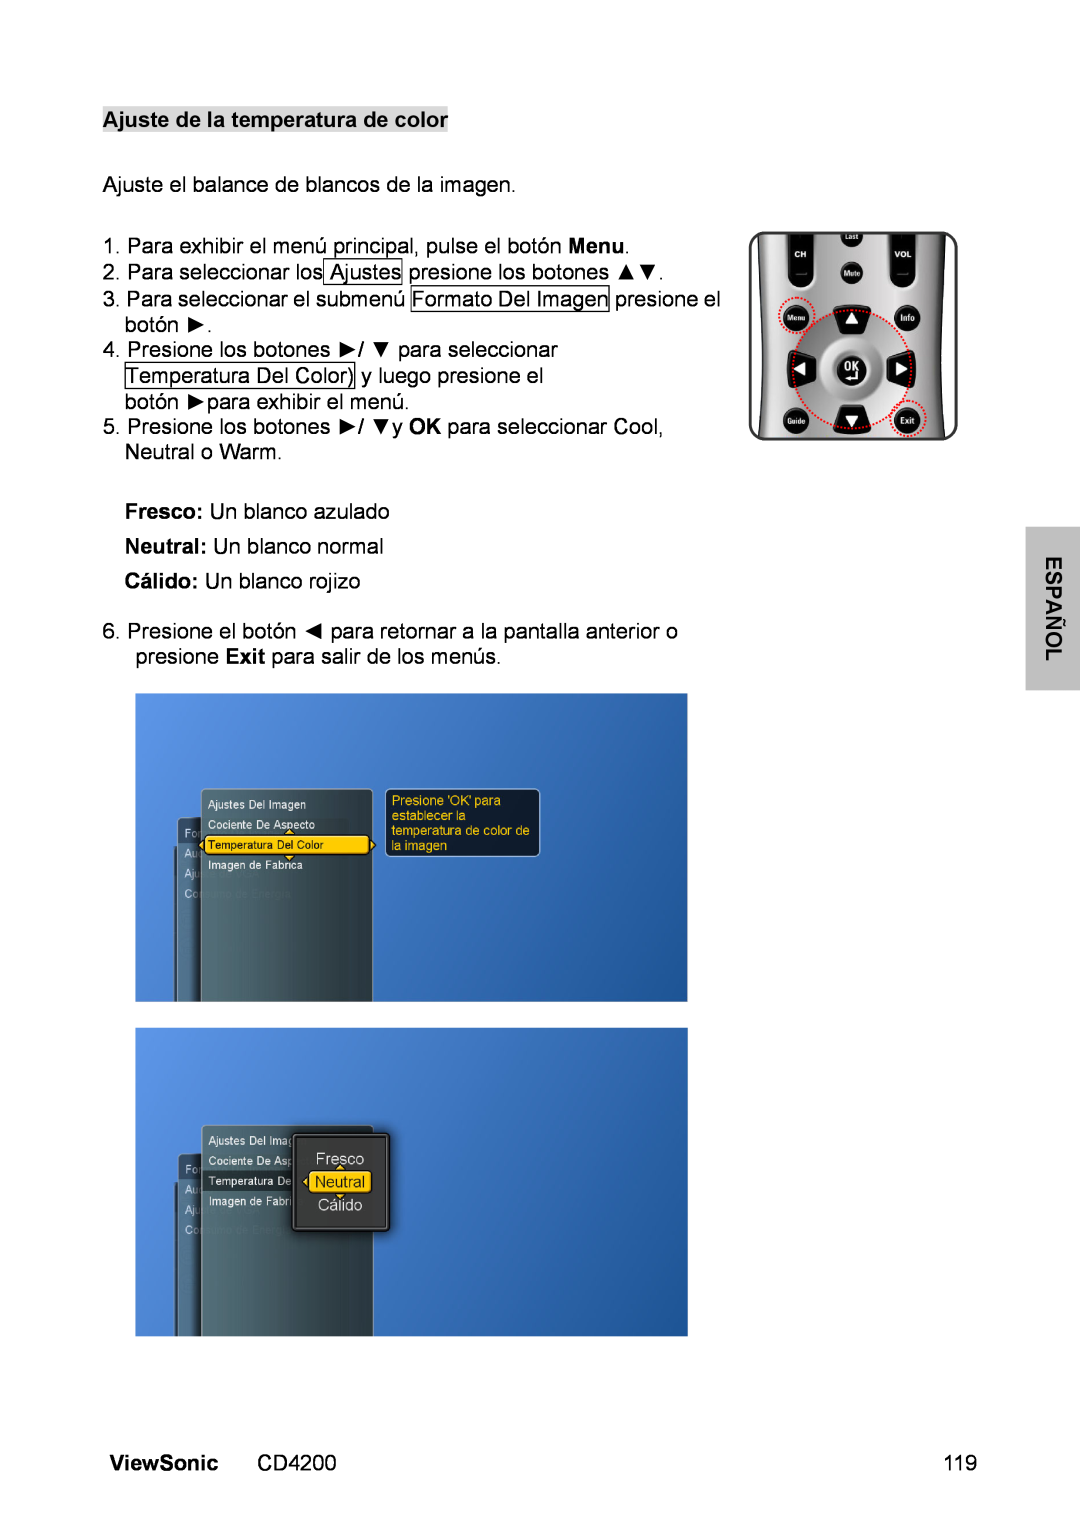 ViewSonic manual Ajuste de la temperatura de color, Español, ViewSonic CD4200 